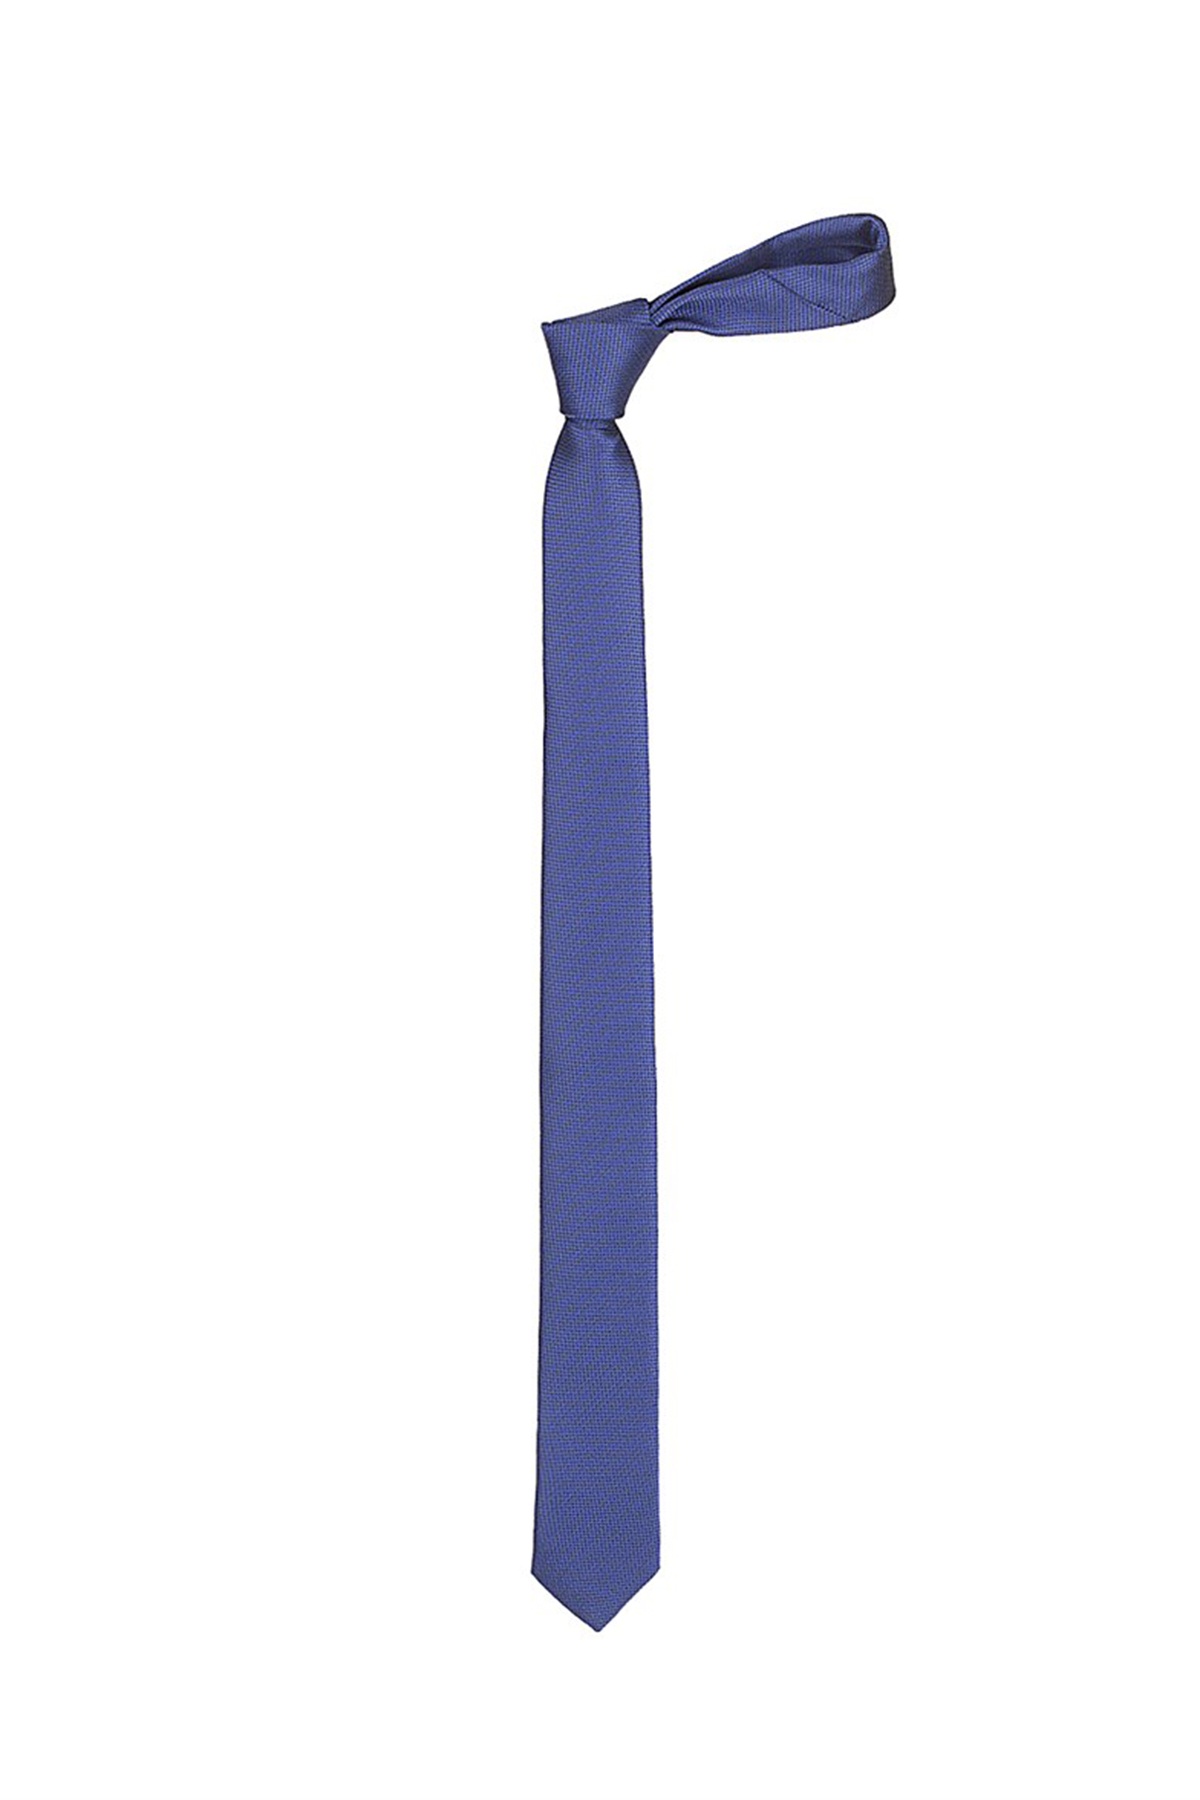 Királykék színű anyagában mintás vékony nyakkendő